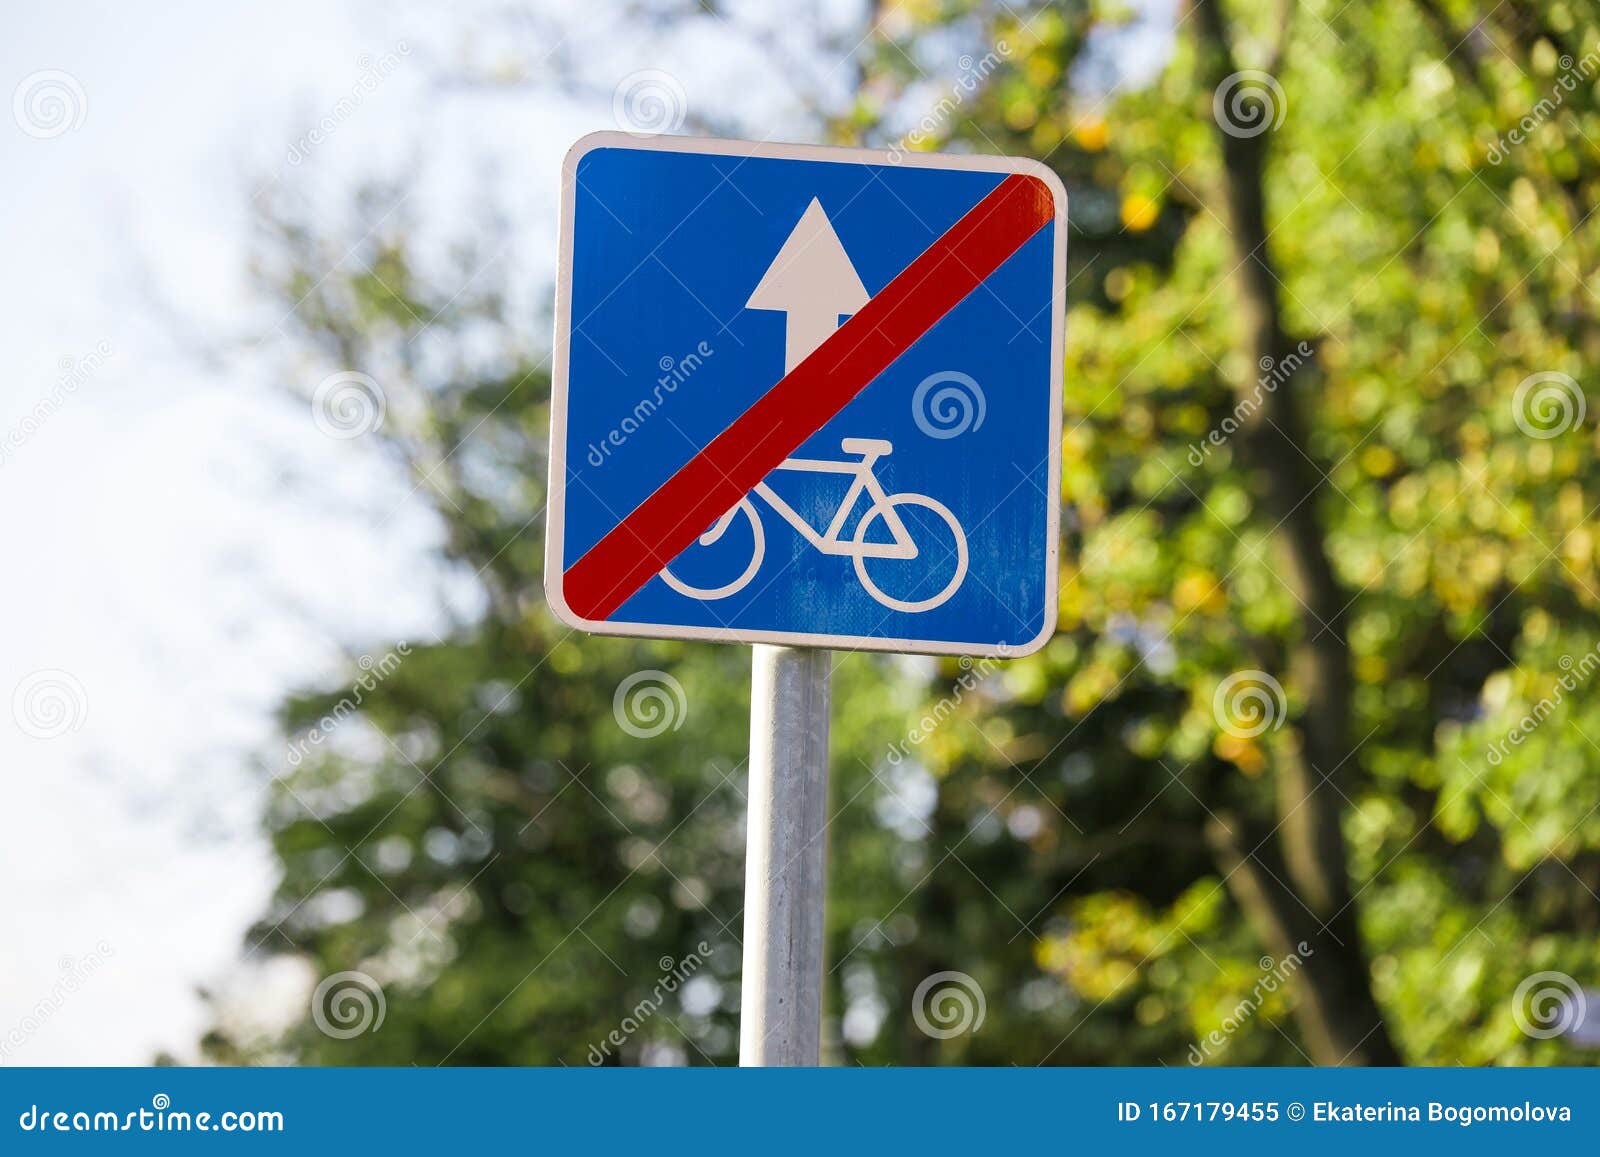 Kết thúc làn đường cho người đi xe đạp: Bạn đang tìm kiếm thông tin về các biển báo đường cho người đi xe đạp? Chúng tôi sẽ giúp bạn tìm hiểu về biển báo kết thúc làn đường cho người đi xe đạp và làm thế nào để thông thạo sử dụng biển báo này. Bấm vào hình ảnh để tìm hiểu thêm.